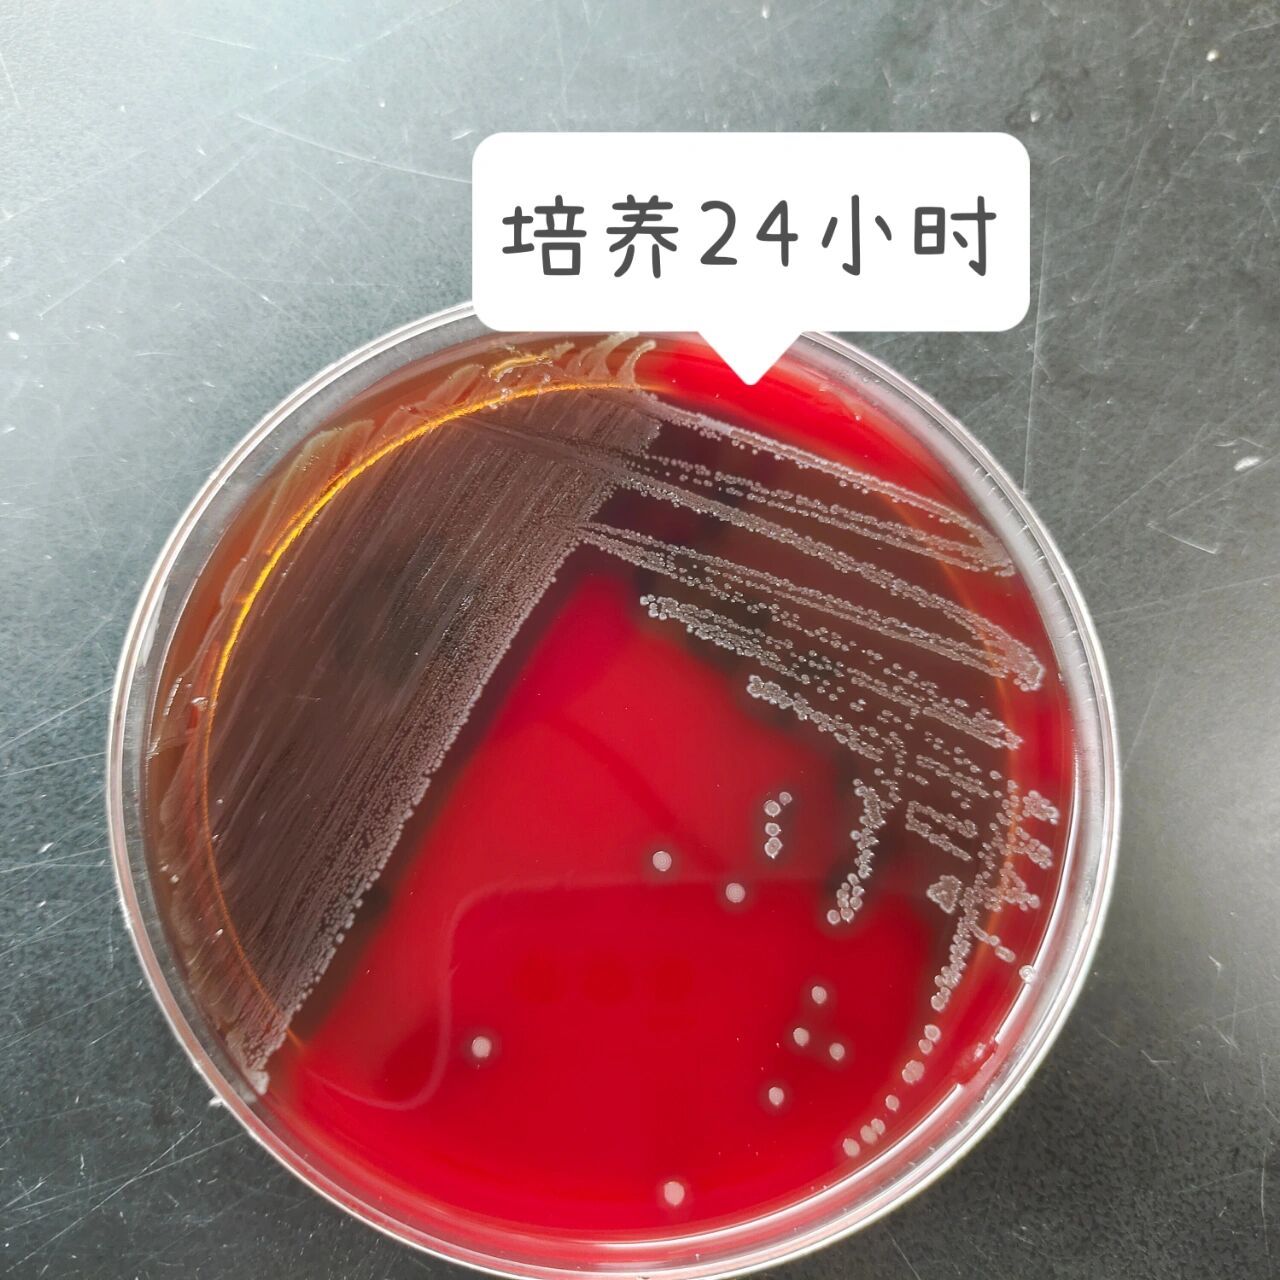 化脓性链球菌图片